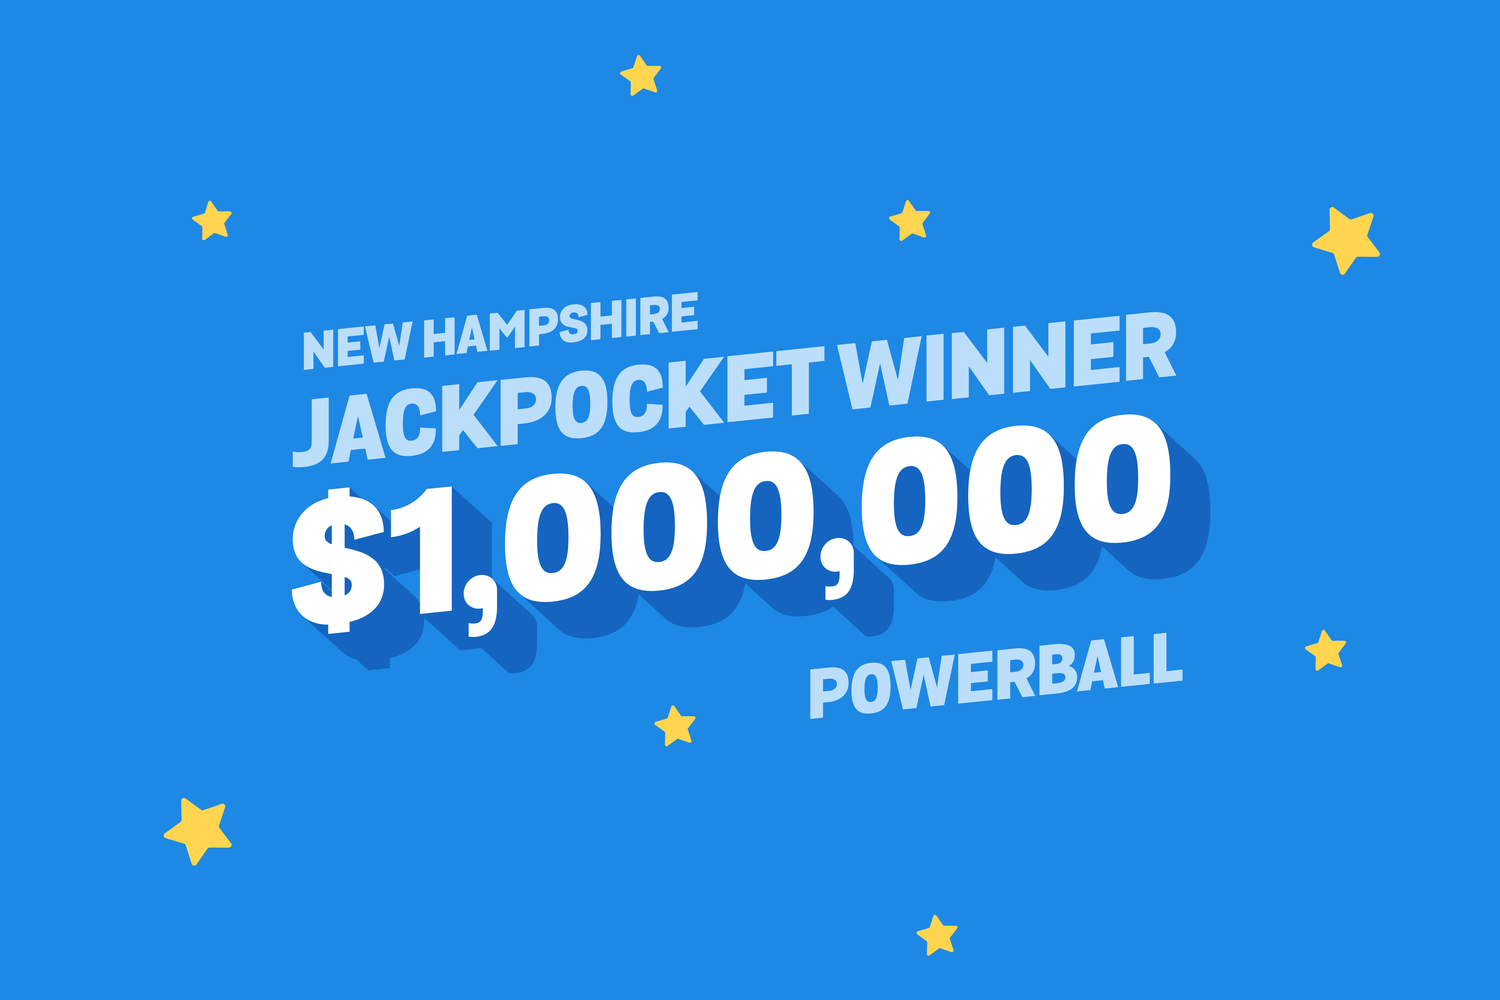 New hampshire powerball $1 million winner